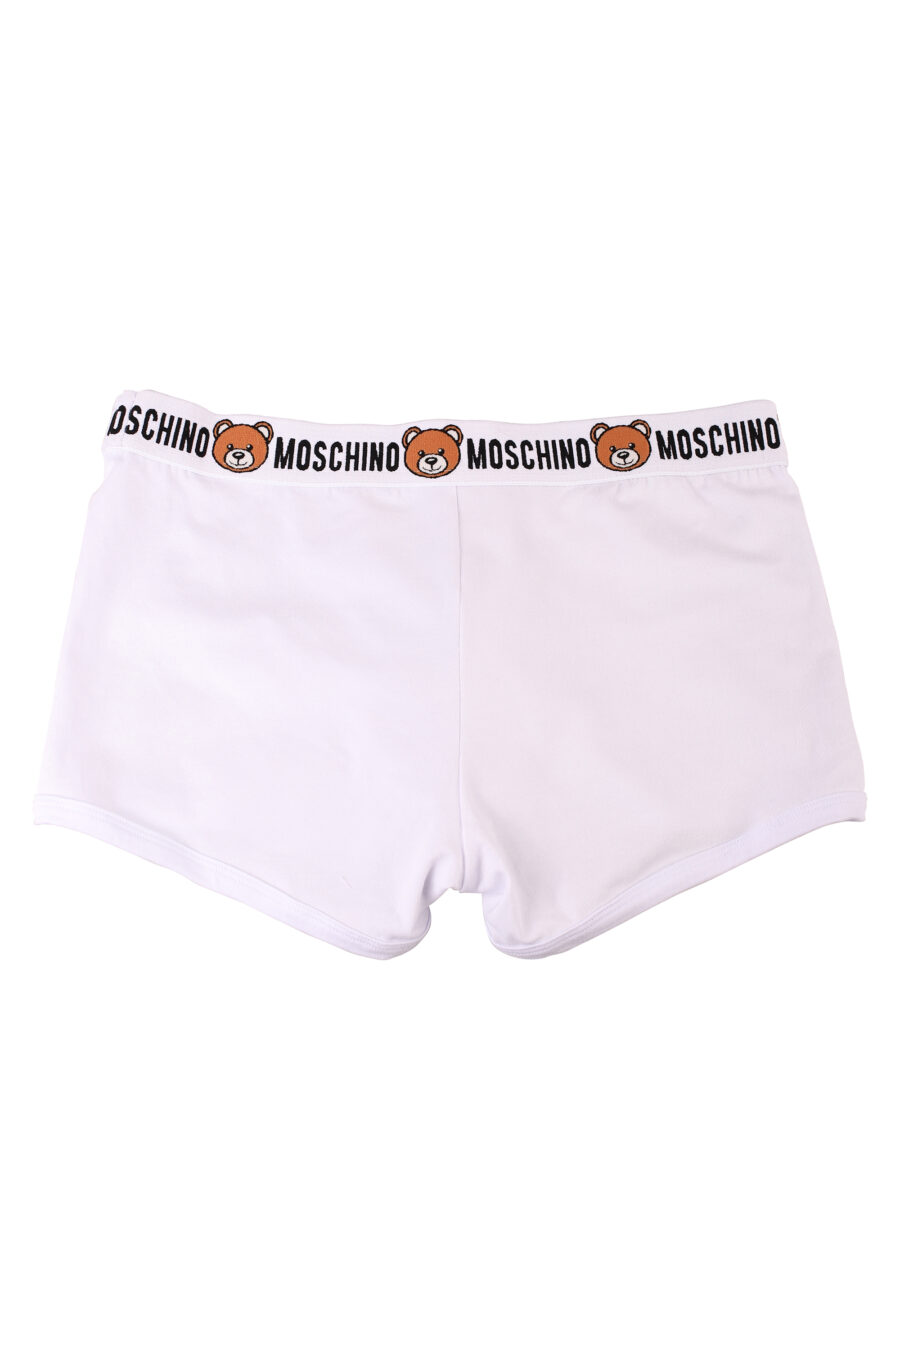 Pack de dos boxers blancos con logo oso "underbear" - IMG 8554